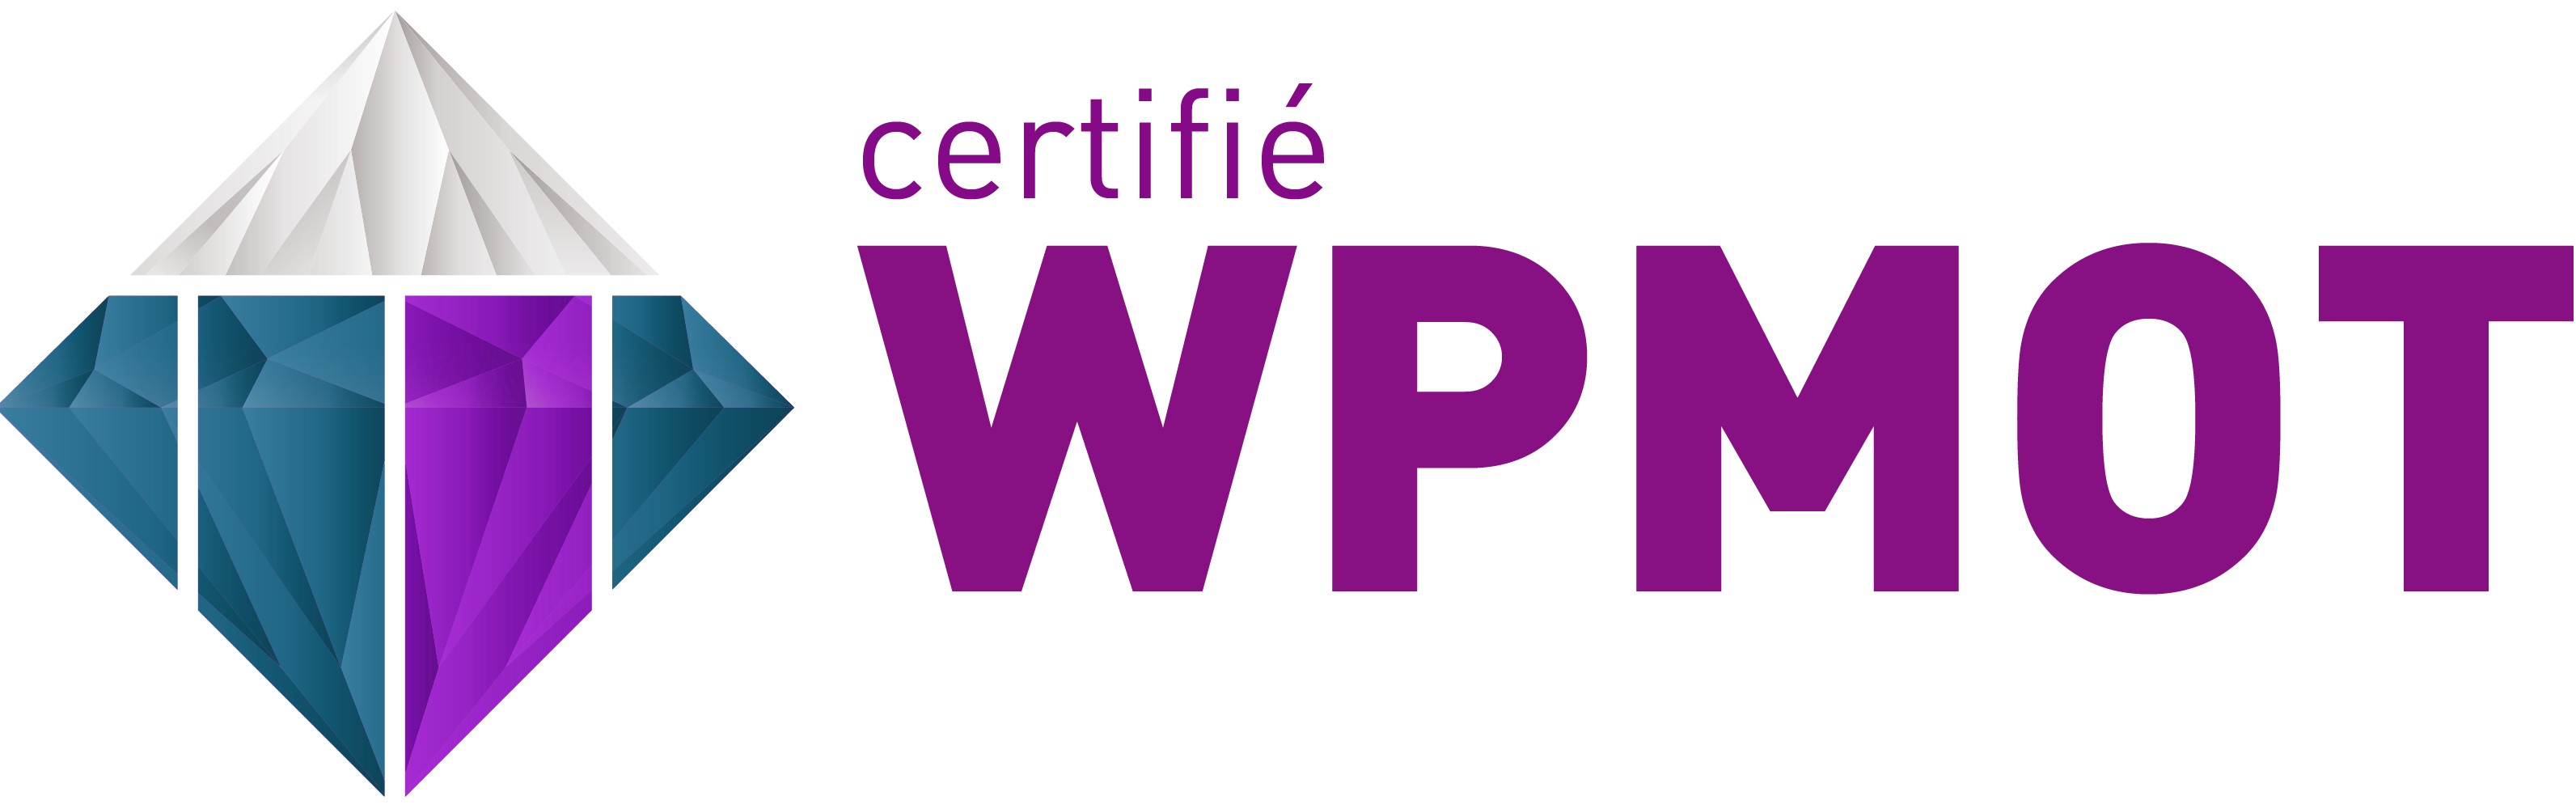 certifié WPMOT